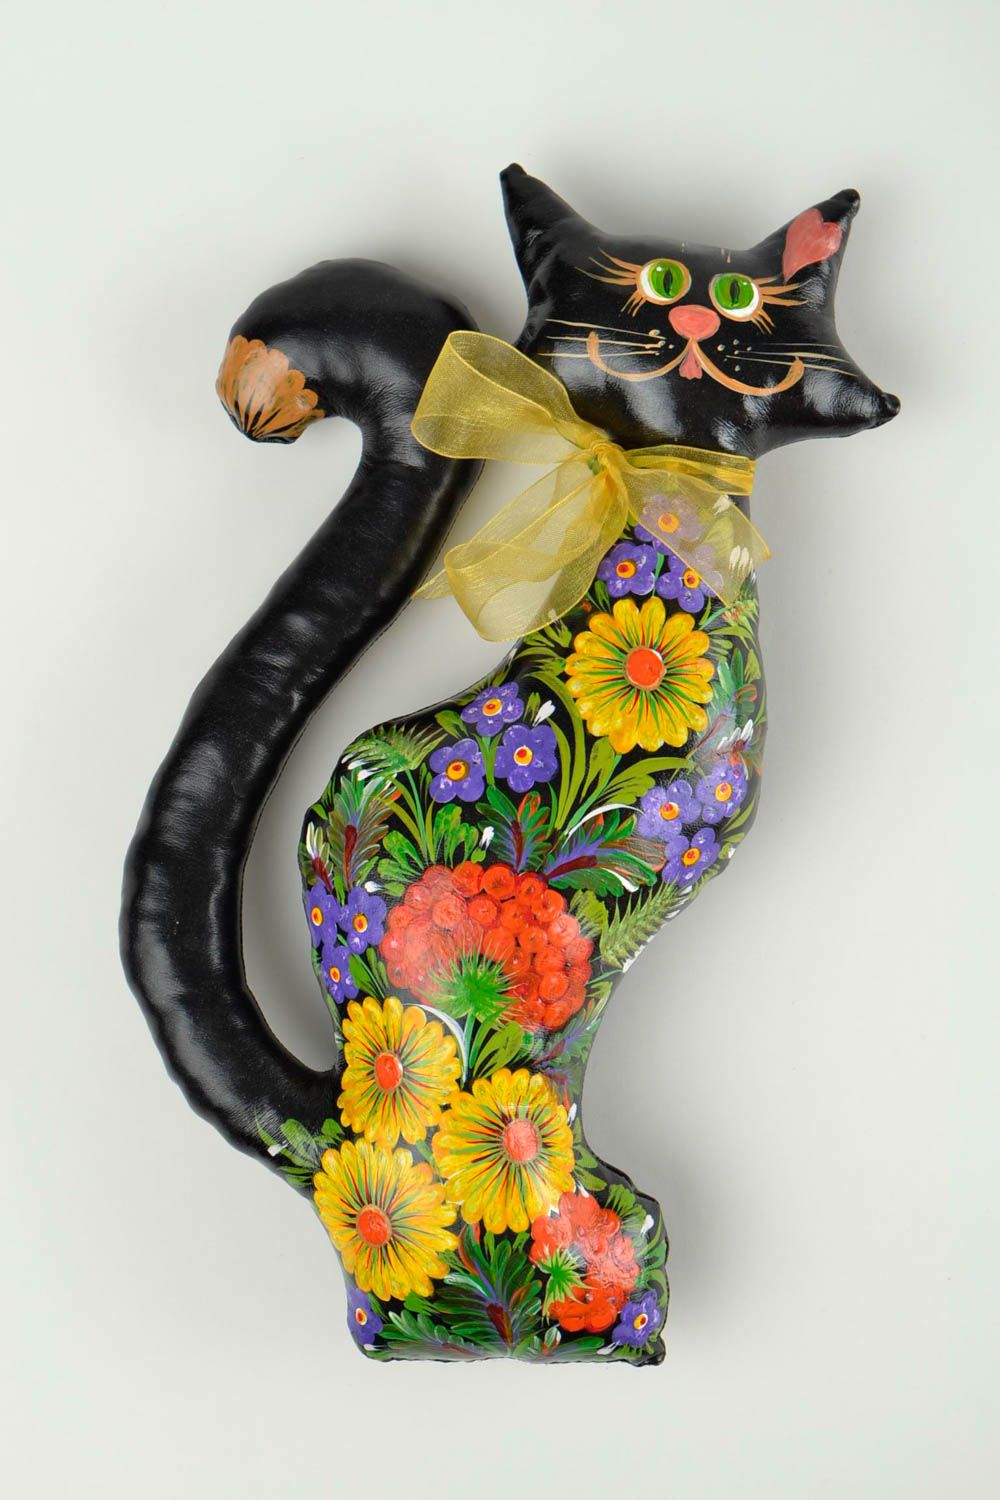 Игрушка ручной работы игрушка кот оригинальная игрушка черная расписная фото 3